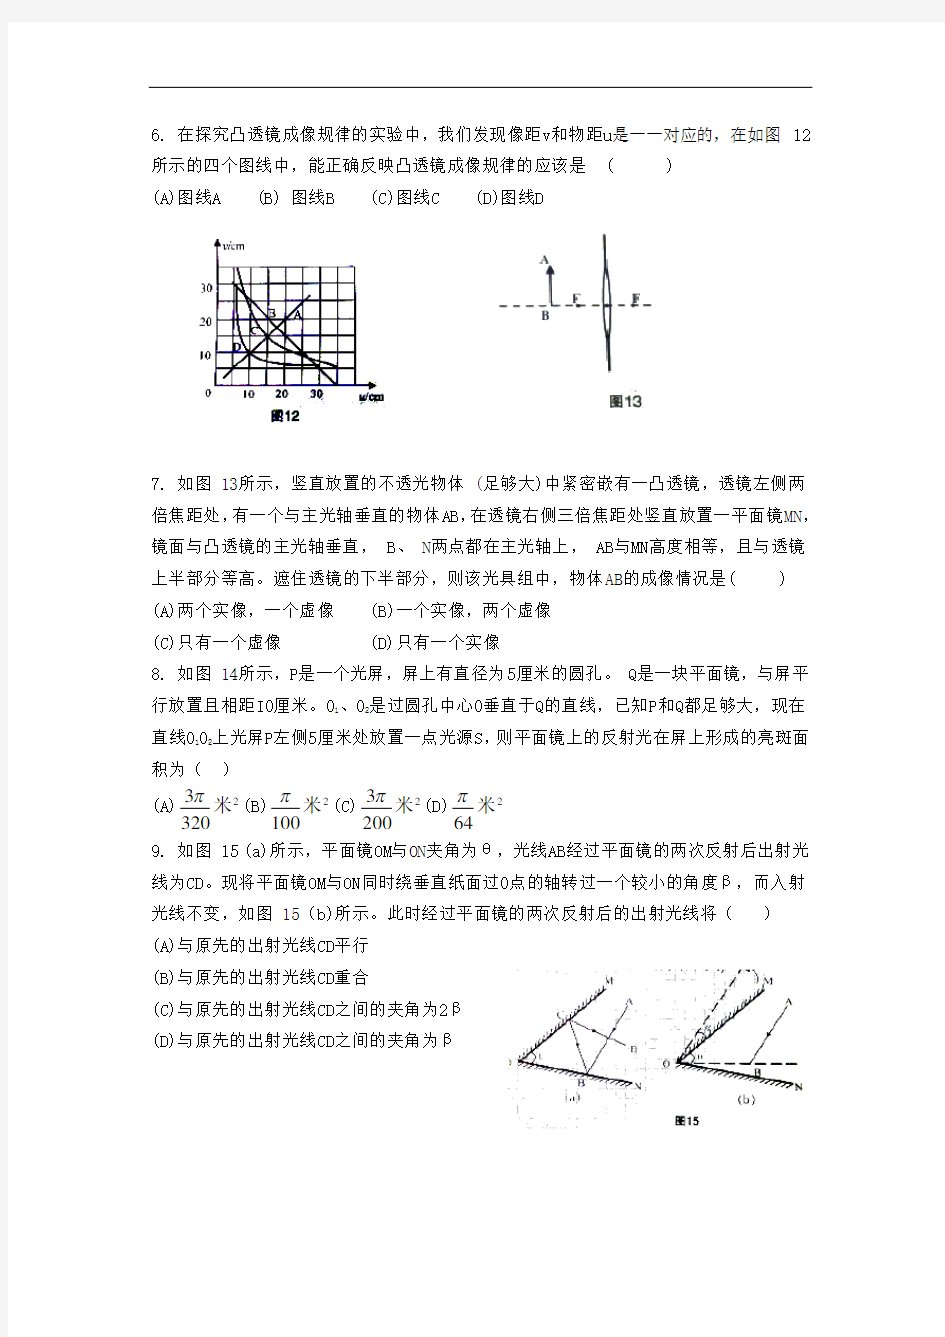 上海初中物理竞赛光学试题汇编(含答案)讲解